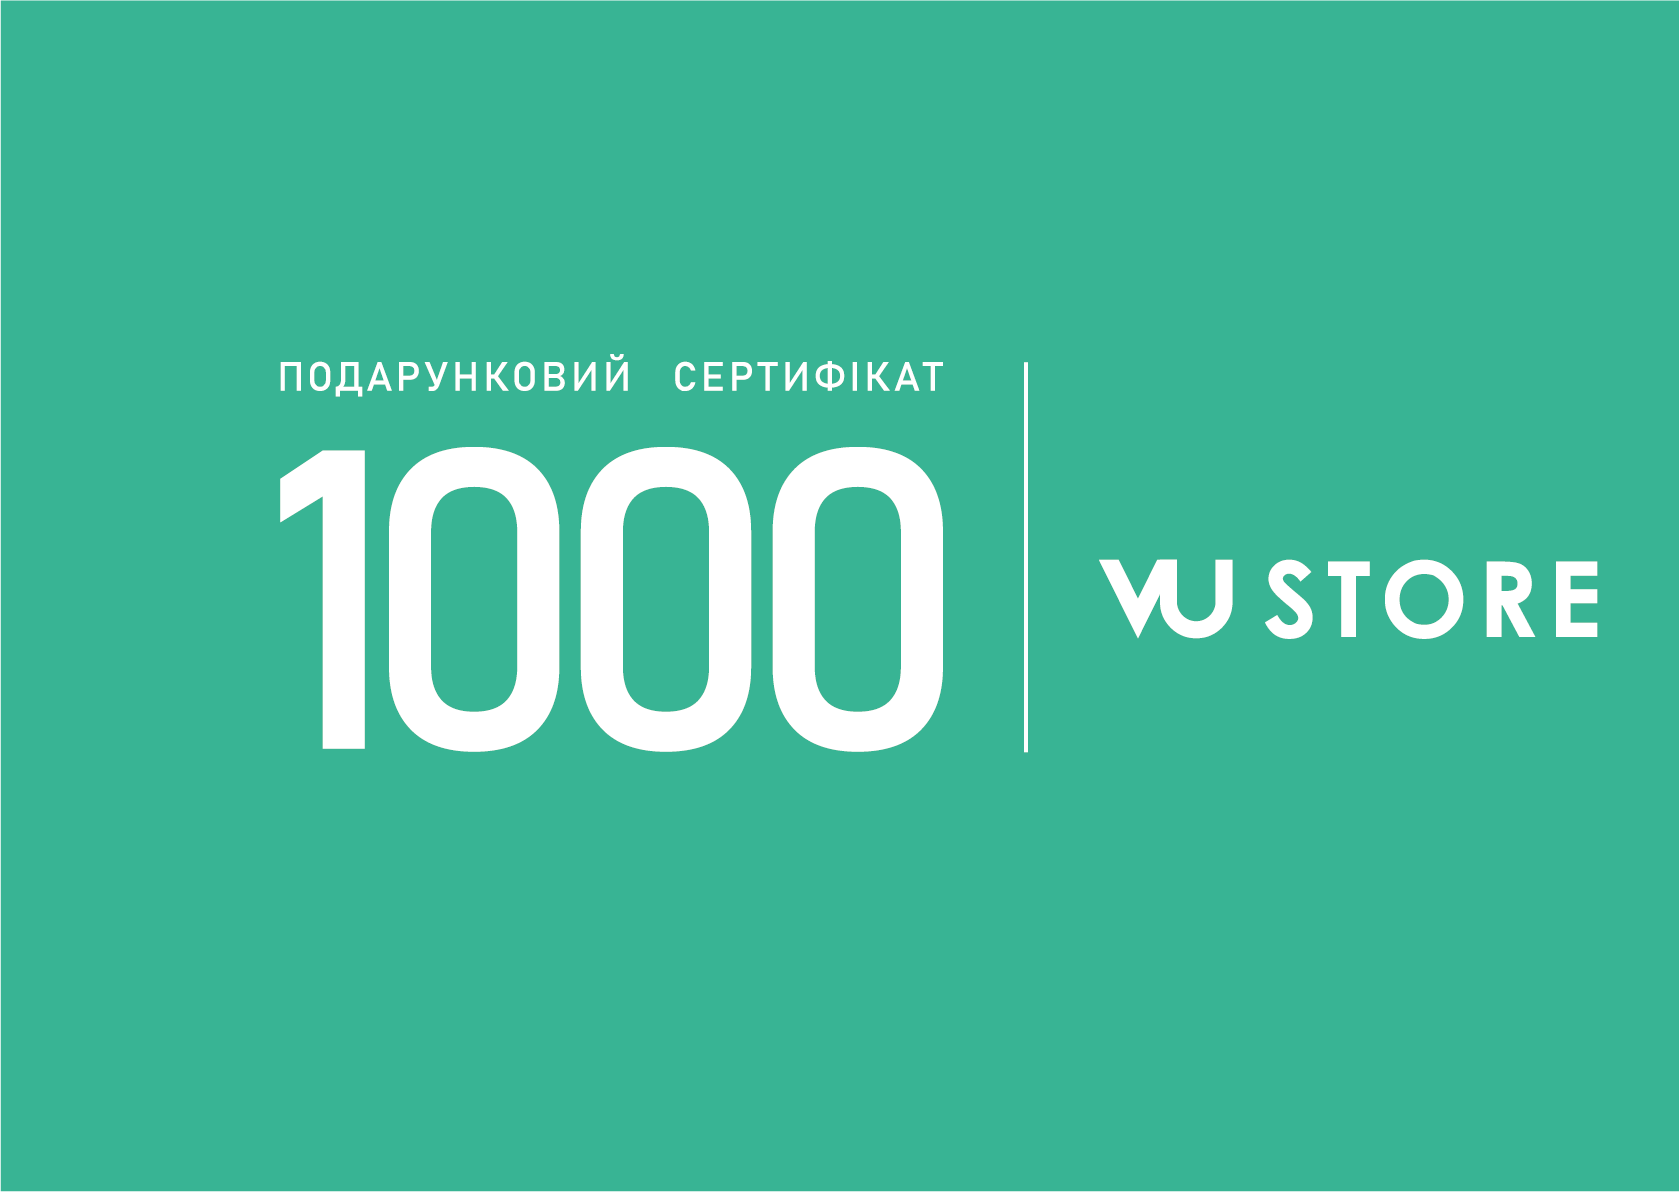 Подарунковий сертифікат (1000 грн.)